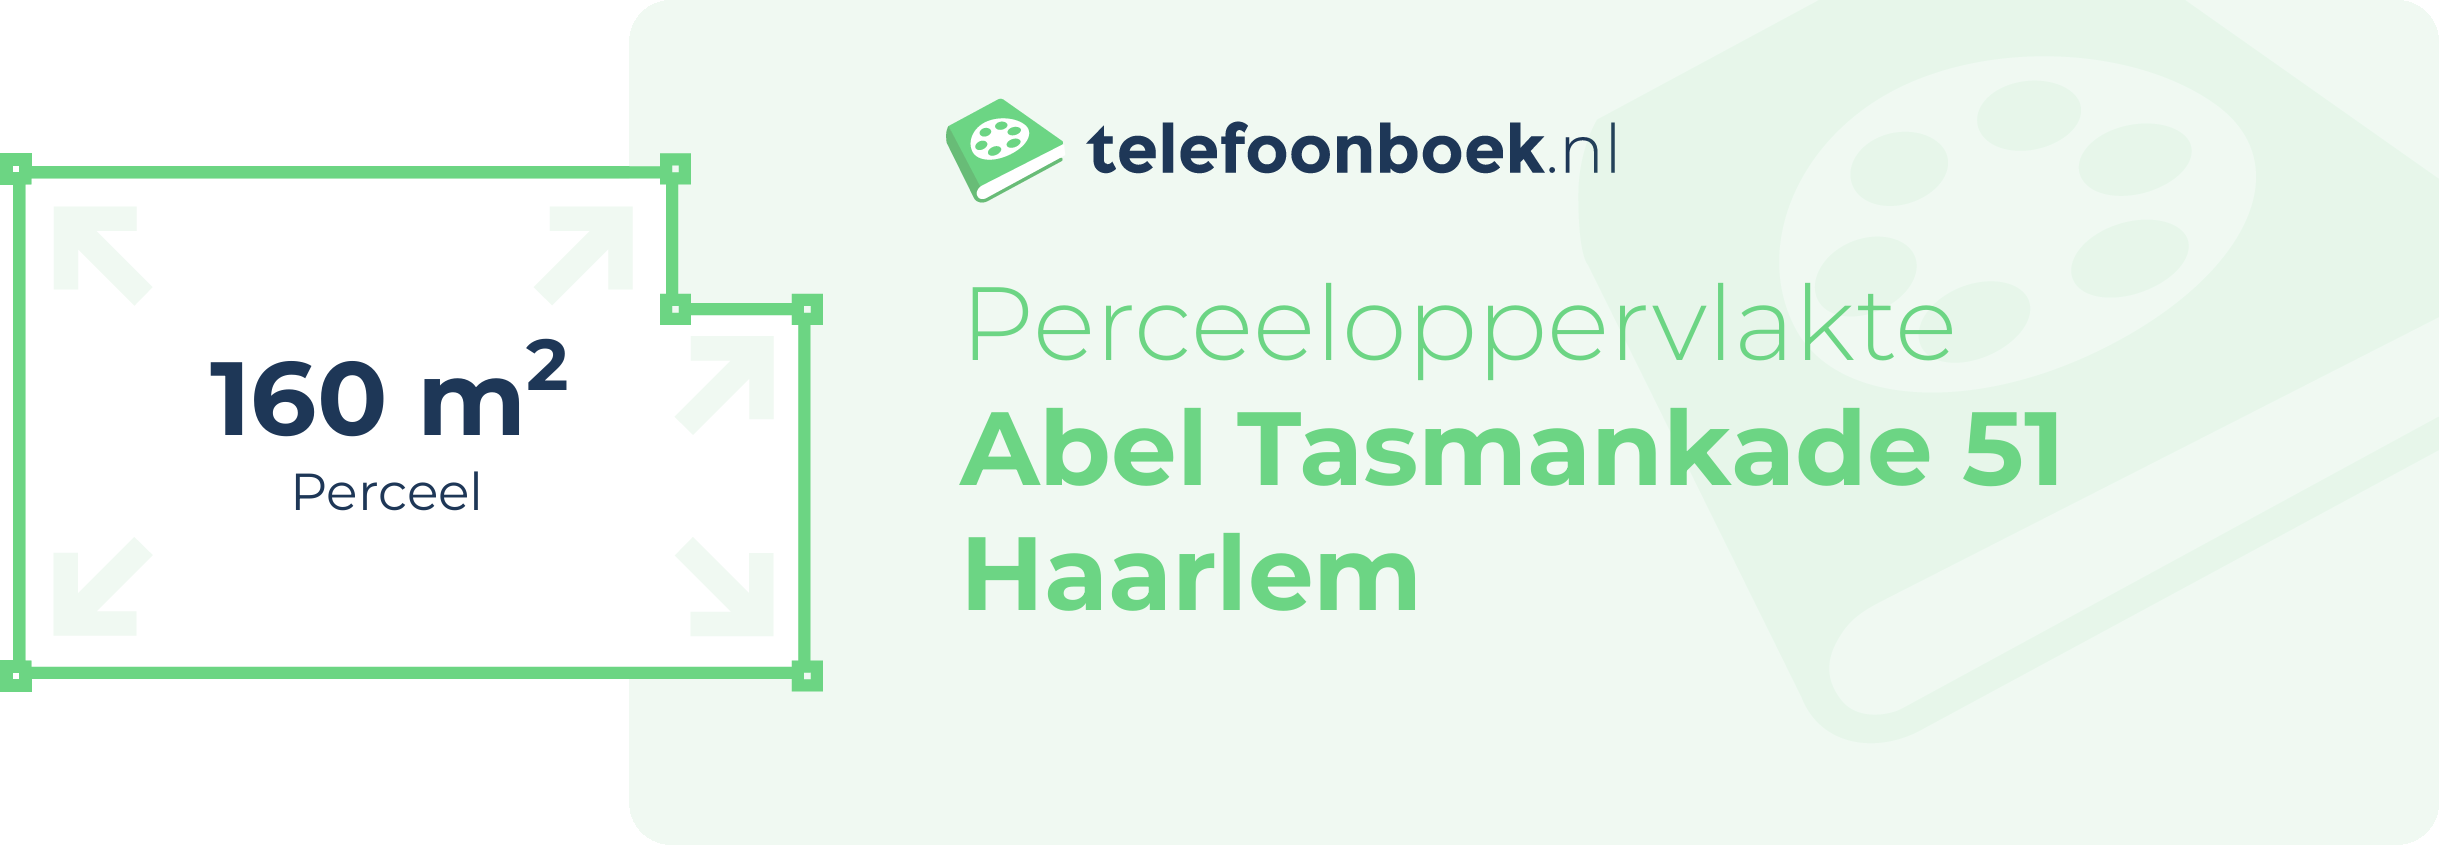 Perceeloppervlakte Abel Tasmankade 51 Haarlem